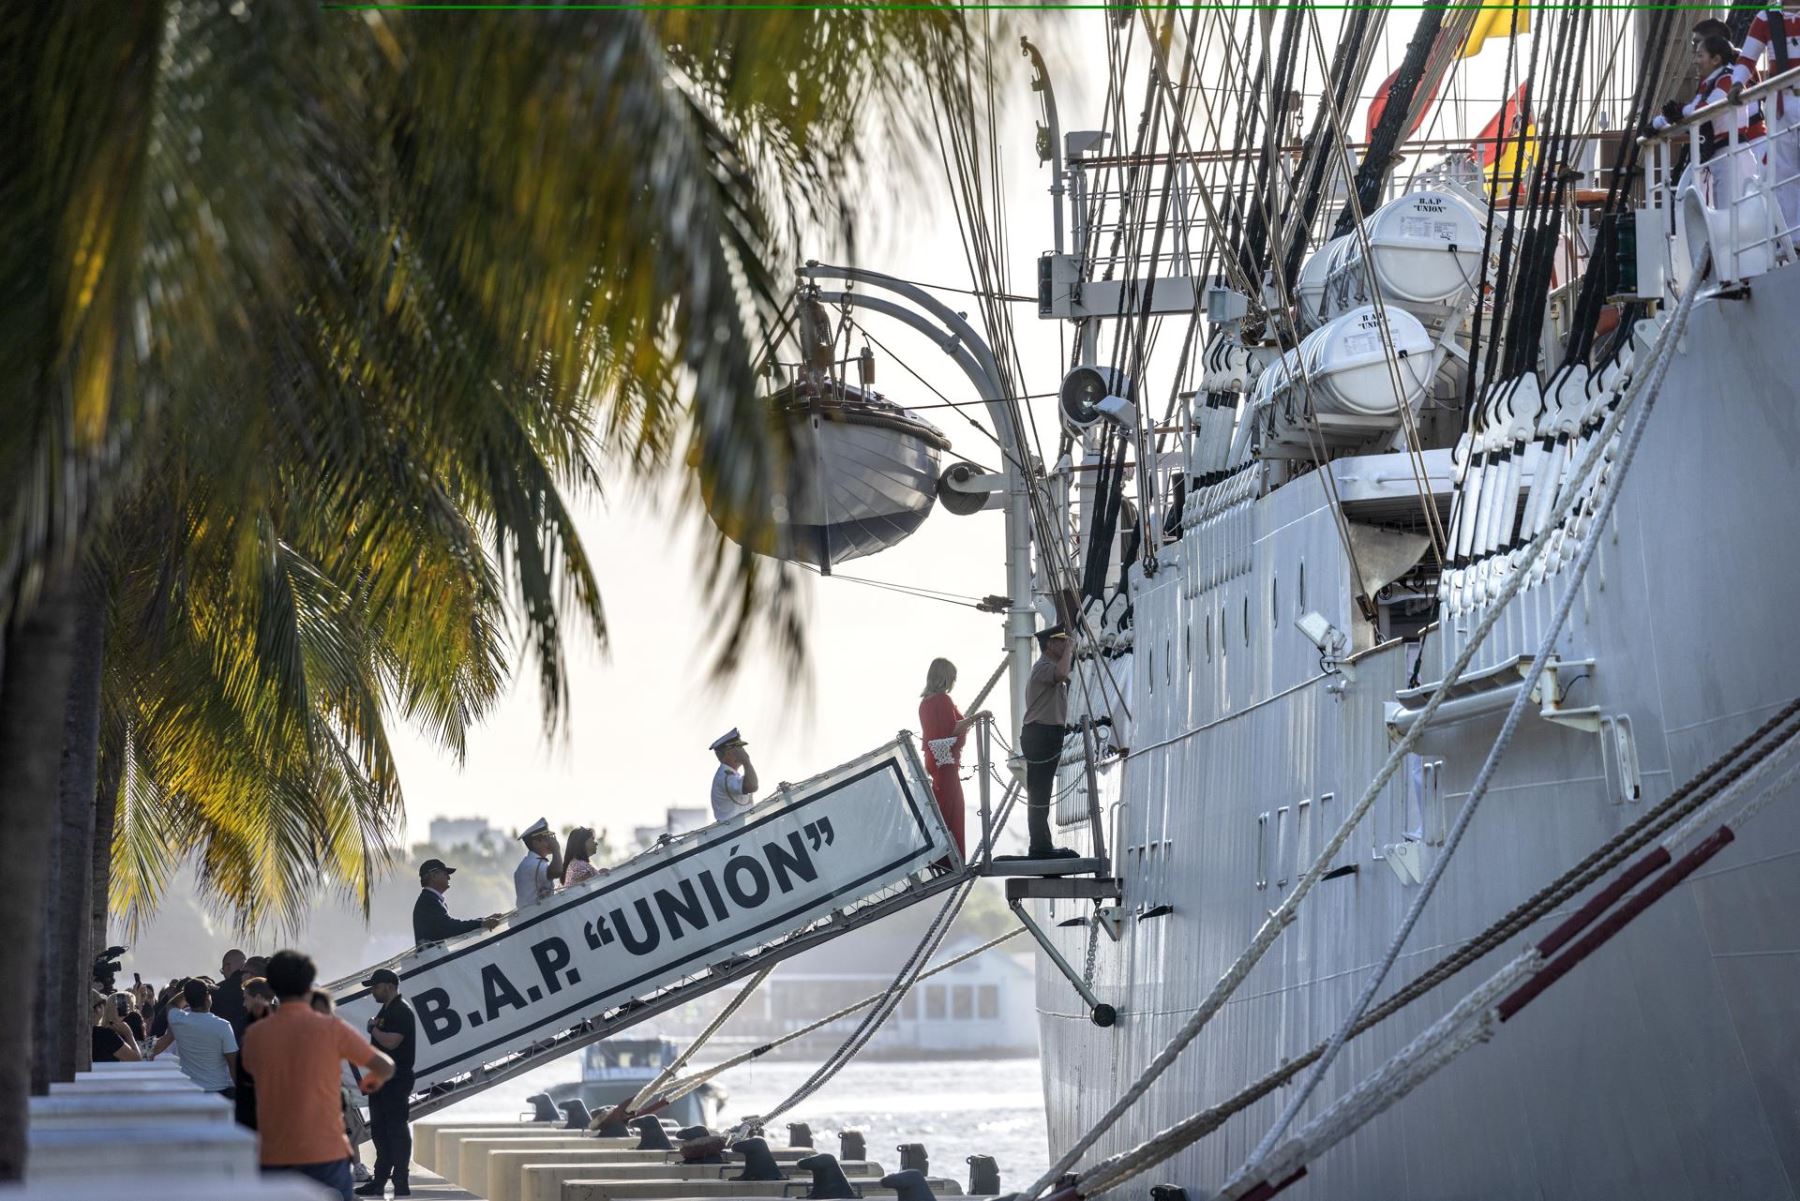 Los oficiales navales saludan al B.A.P. La tripulación del buque de la Armada Peruana de la Unión durante su llegada a Miami, Florida, EE.UU., 13 de marzo de 2024.
Foto: EFE